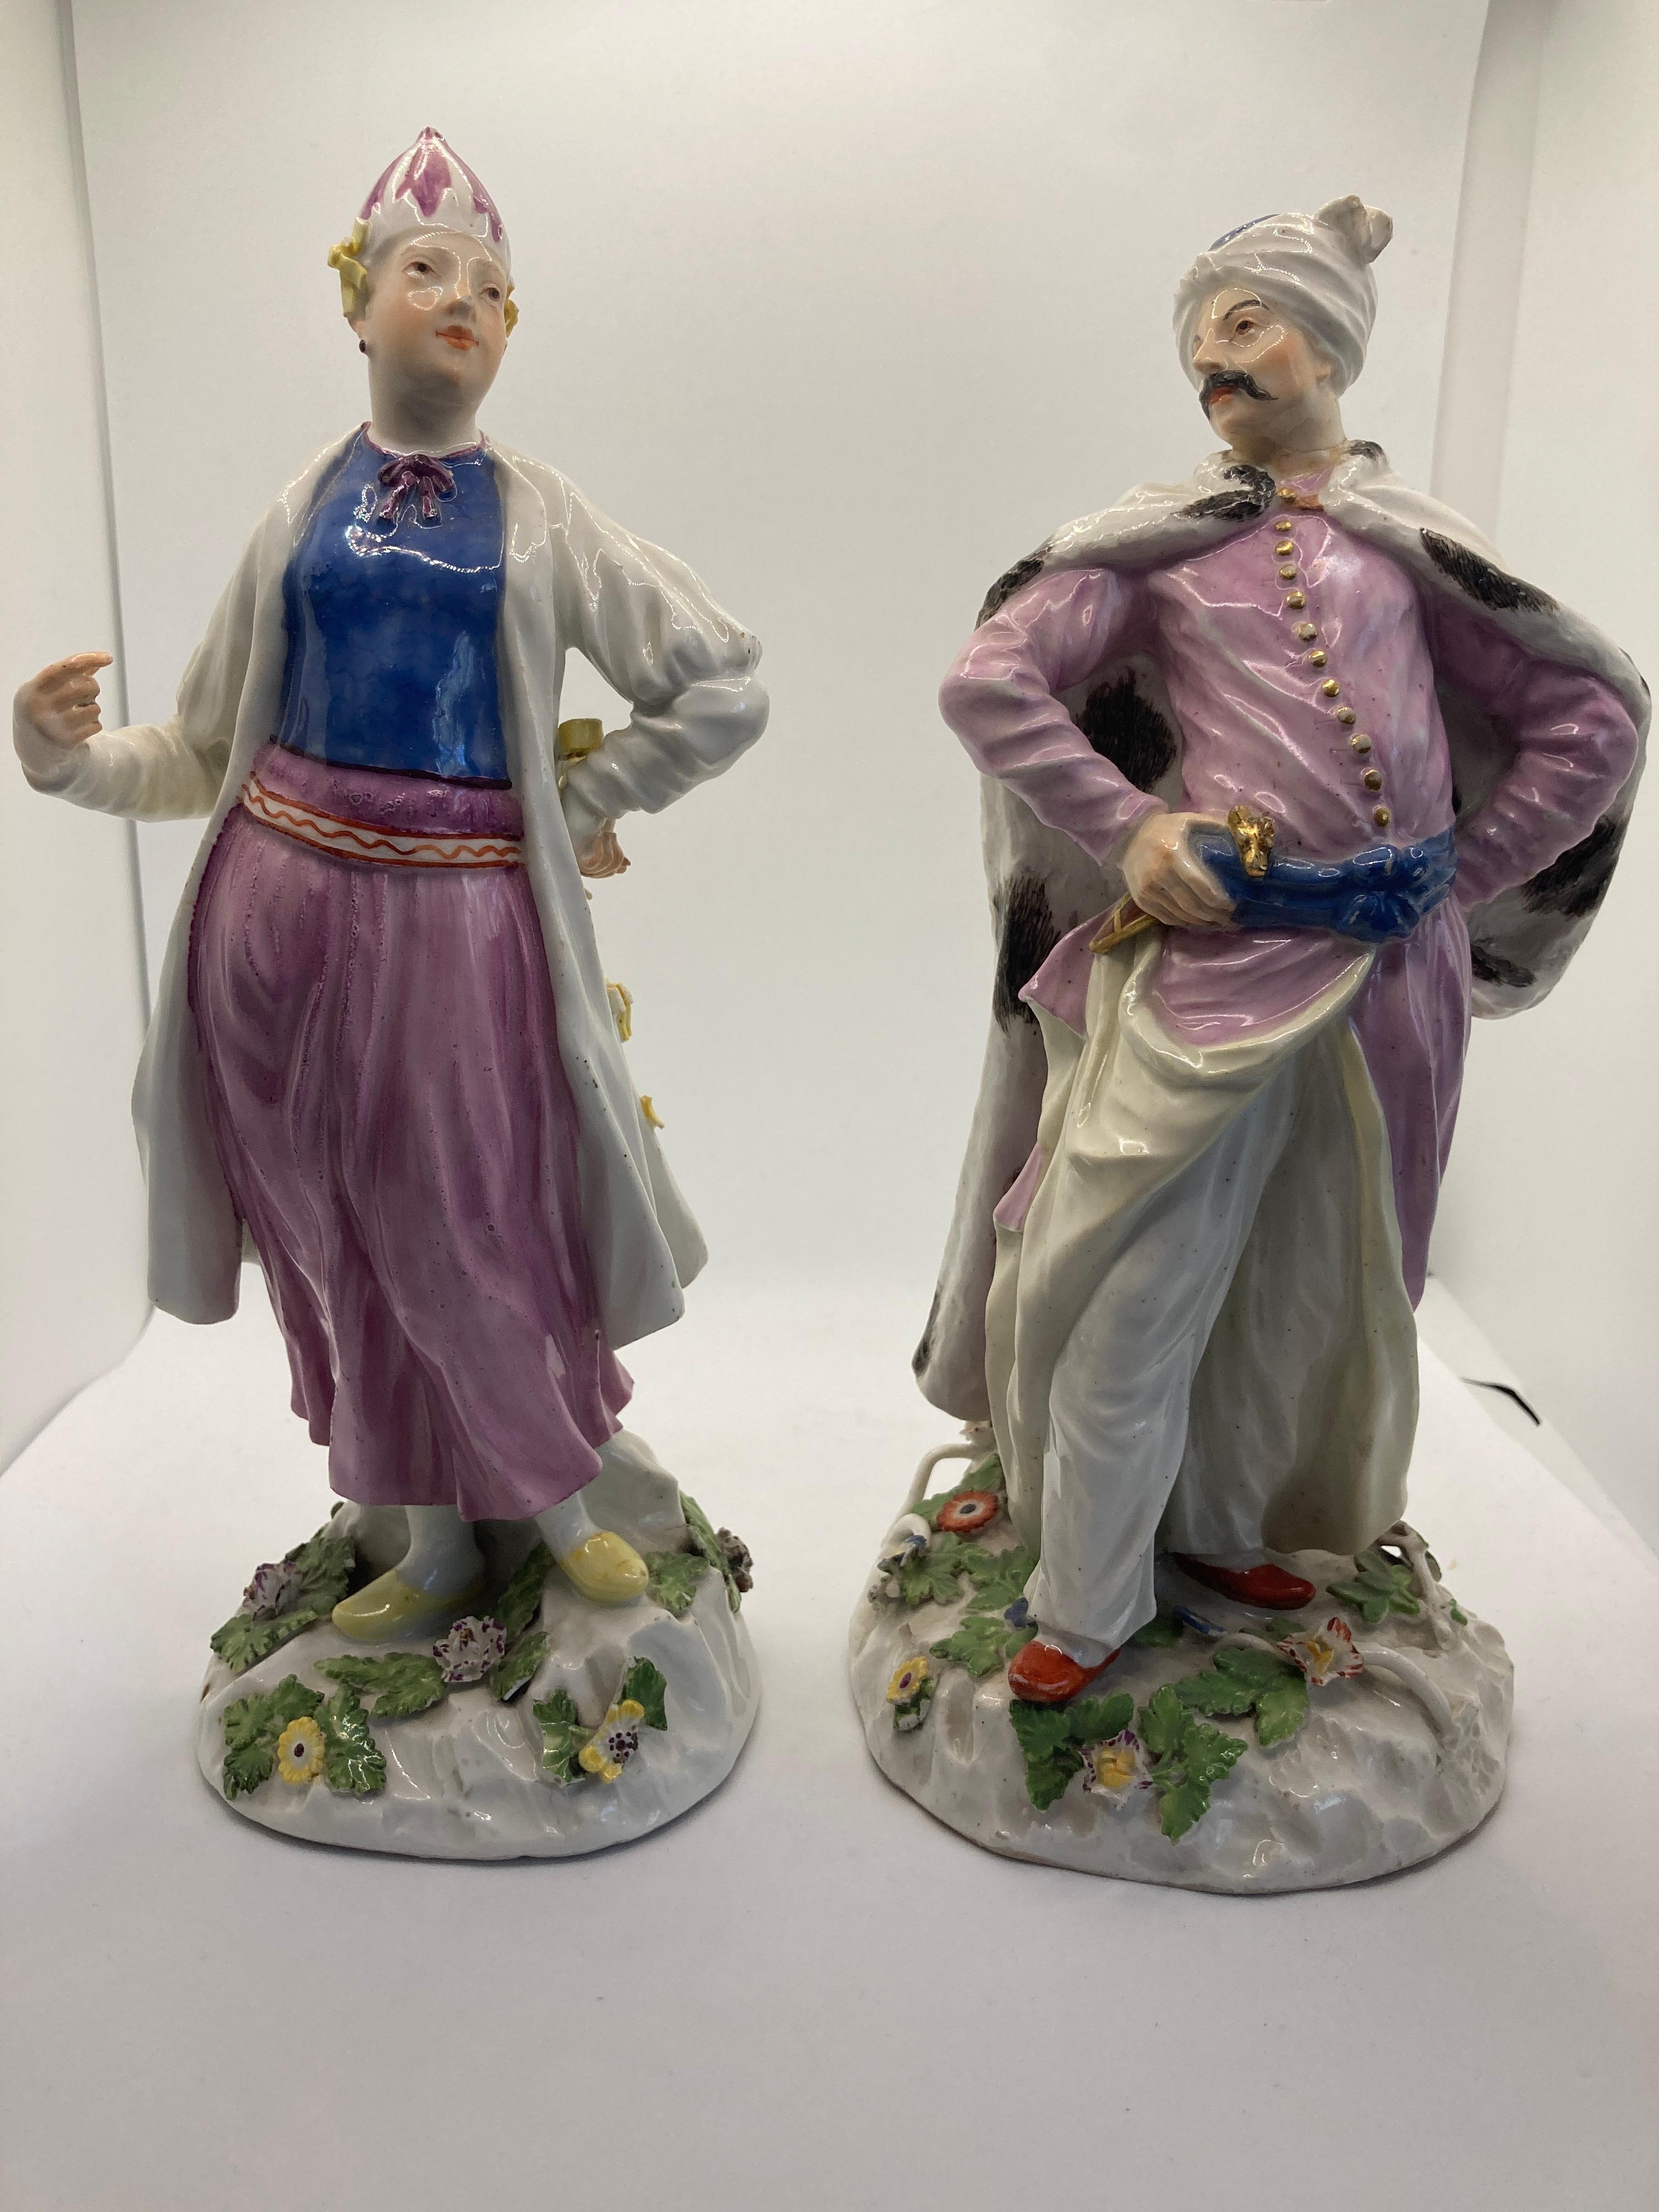 Figurines en porcelaine de Meissen du XVIIIe siècle, dame et gentleman turcs/persans. circa 1755 

Tous deux conçus par Johann Joachim Kaendler, rares et premiers exemplaires des deux modèles.

